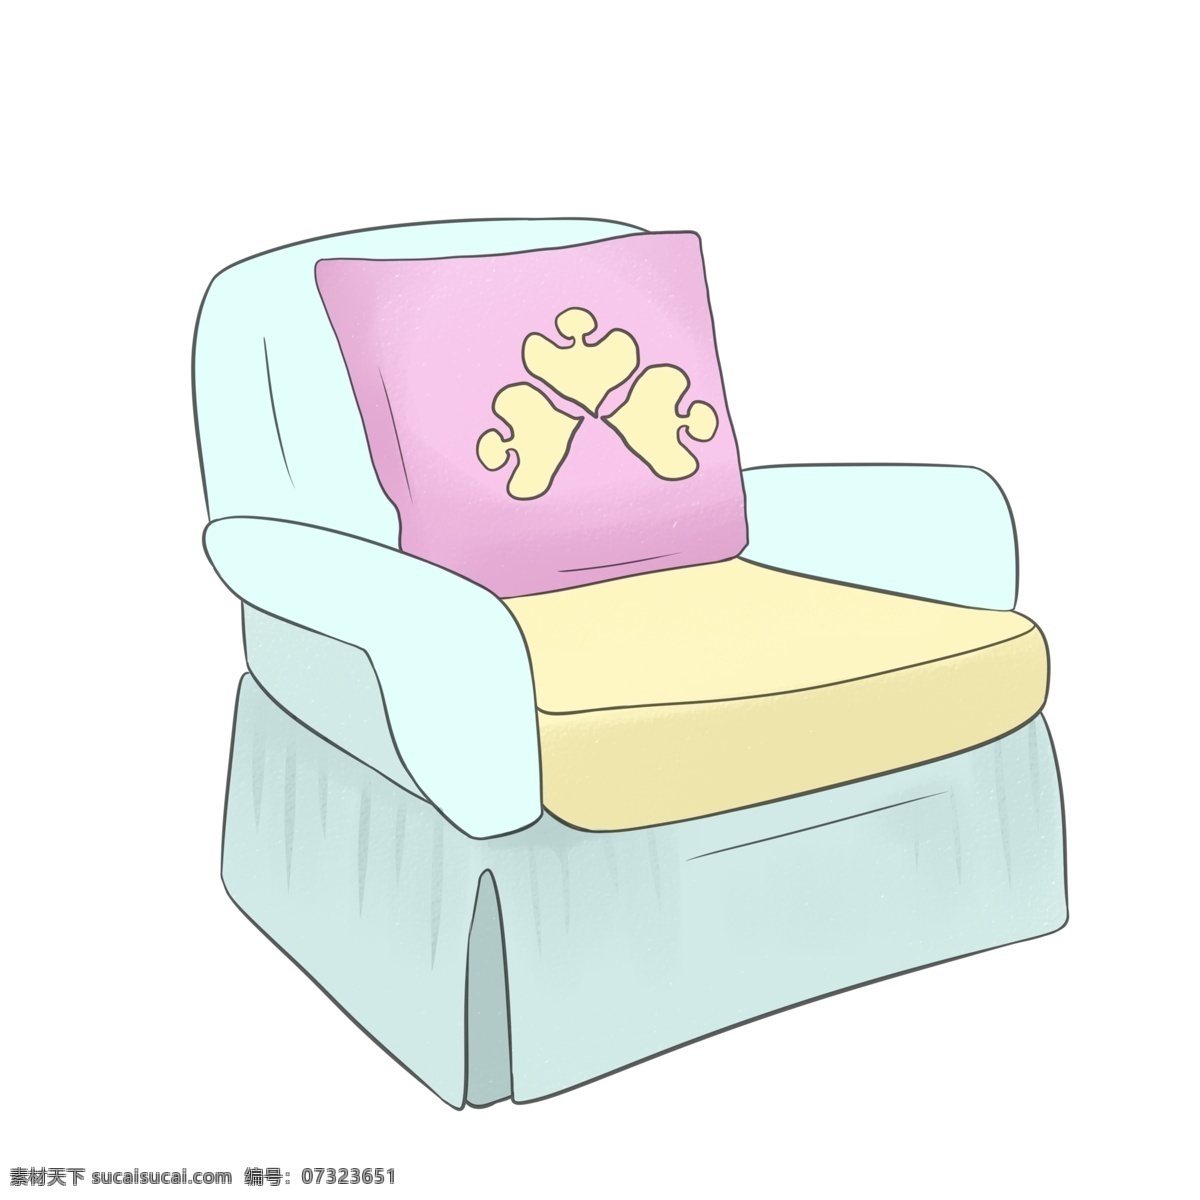 绿色 单人 沙发 插画 绿色沙发 黄色坐垫 粉色爱心抱枕 手绘卡通沙发 沙发椅 单人沙发插画 软垫沙发 单人沙发椅子